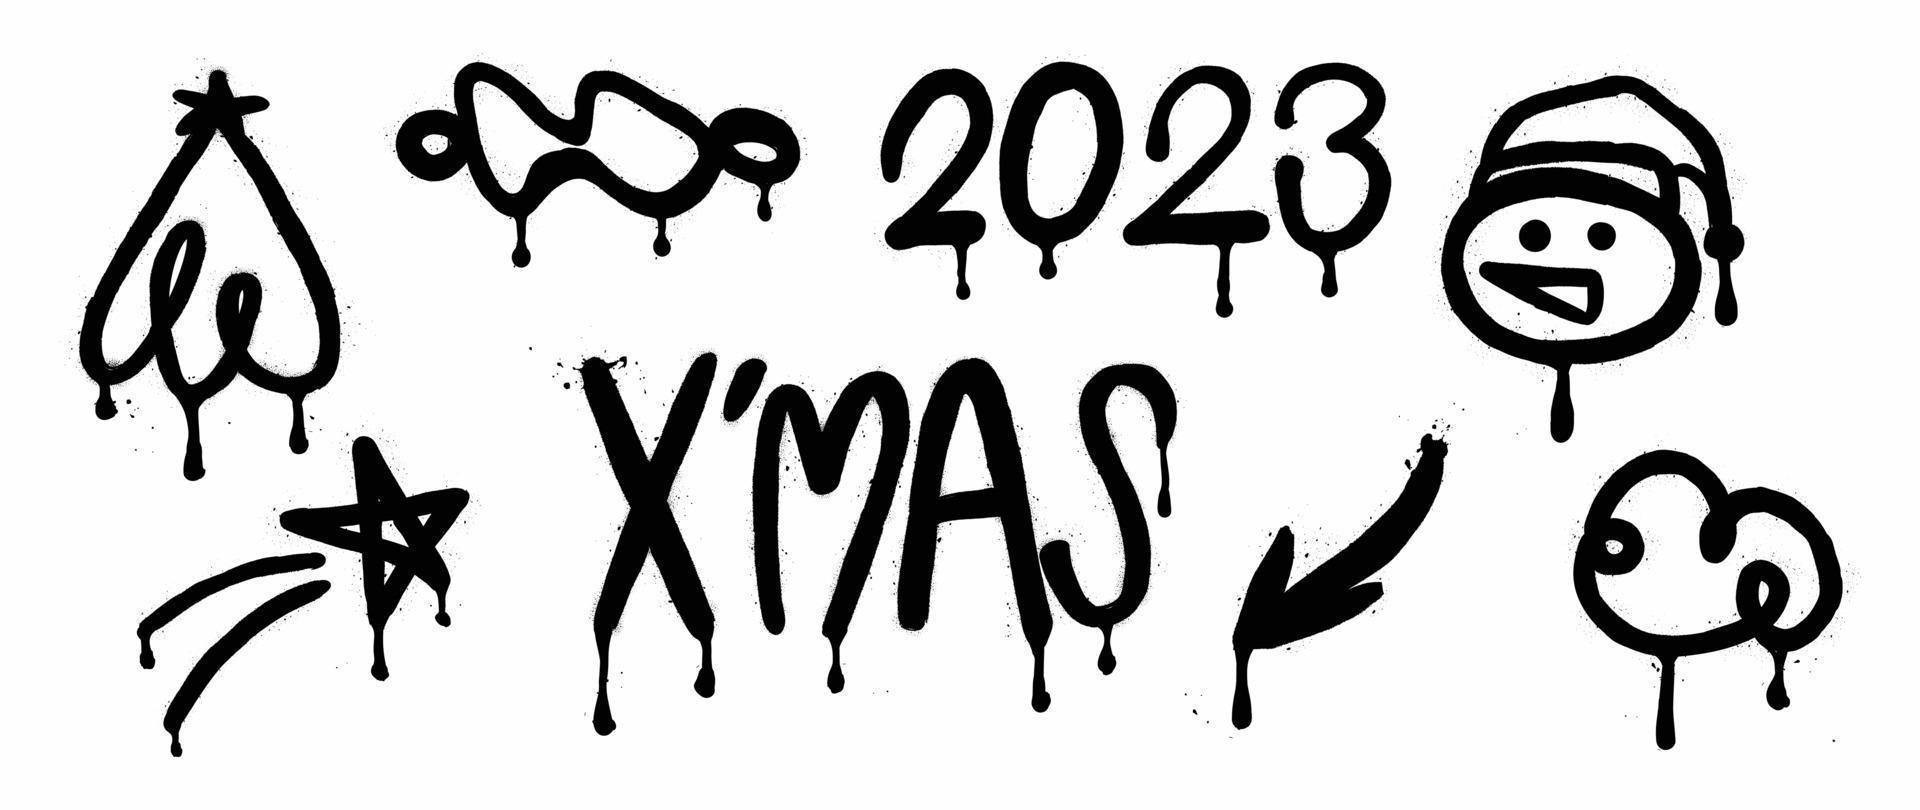 uppsättning av jul och ny år 2023 element svart spray måla vektor. graffiti, grunge element av snögubbe, stjärna, abstrakt form på vit bakgrund. design illustration för dekoration, kort, klistermärke. vektor